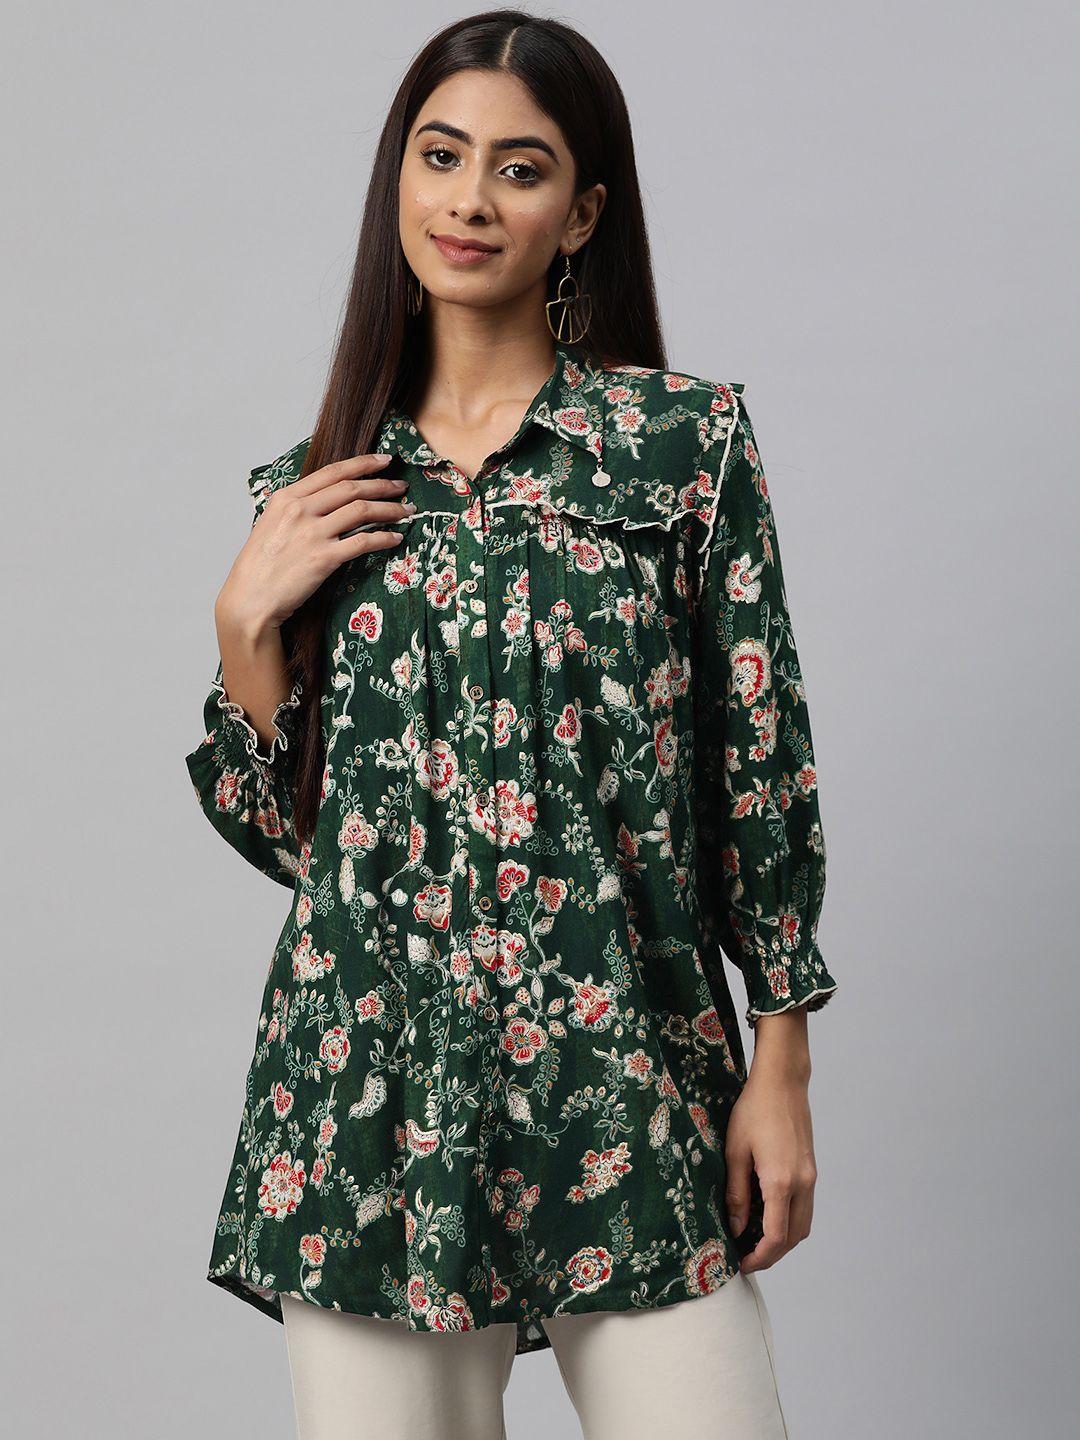 nayam by lakshita smart floral printed puff sleeves ruffled longline casual shirt